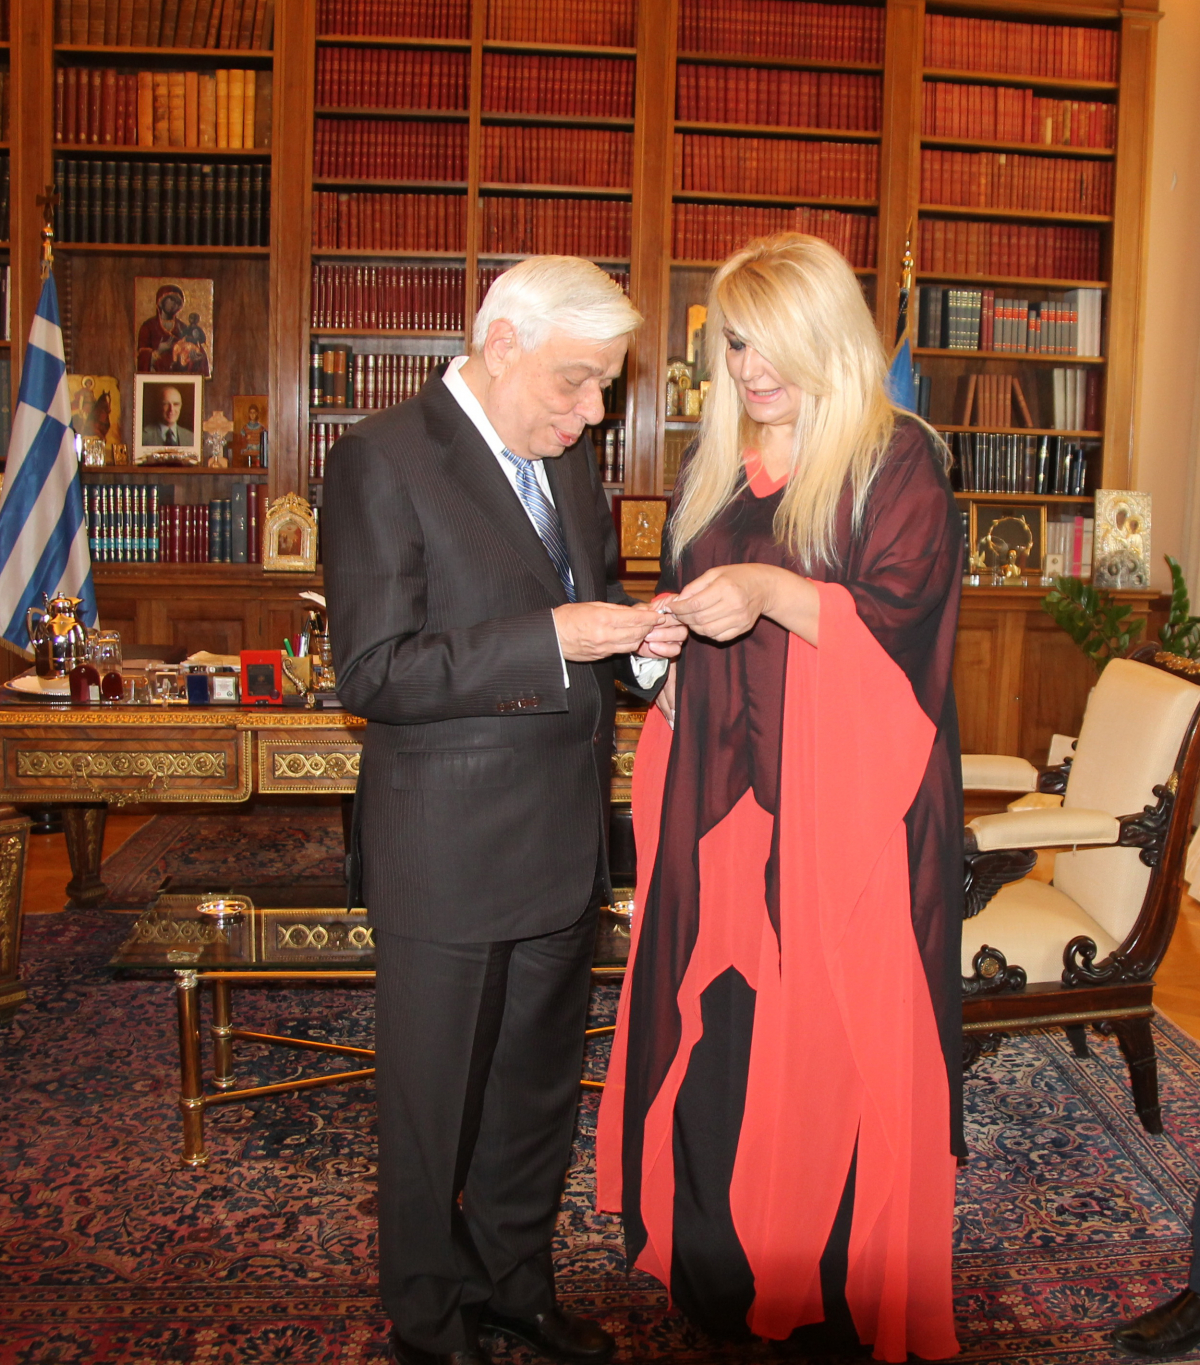 Η Γ.Γ. Βίκυ Μπαφατάκη απονέμει αναμνηστικό μετάλλιο Sciacca στον Πρόεδρο της Ελληνικής Δημοκρατίας κ. Παυλόπουλο 